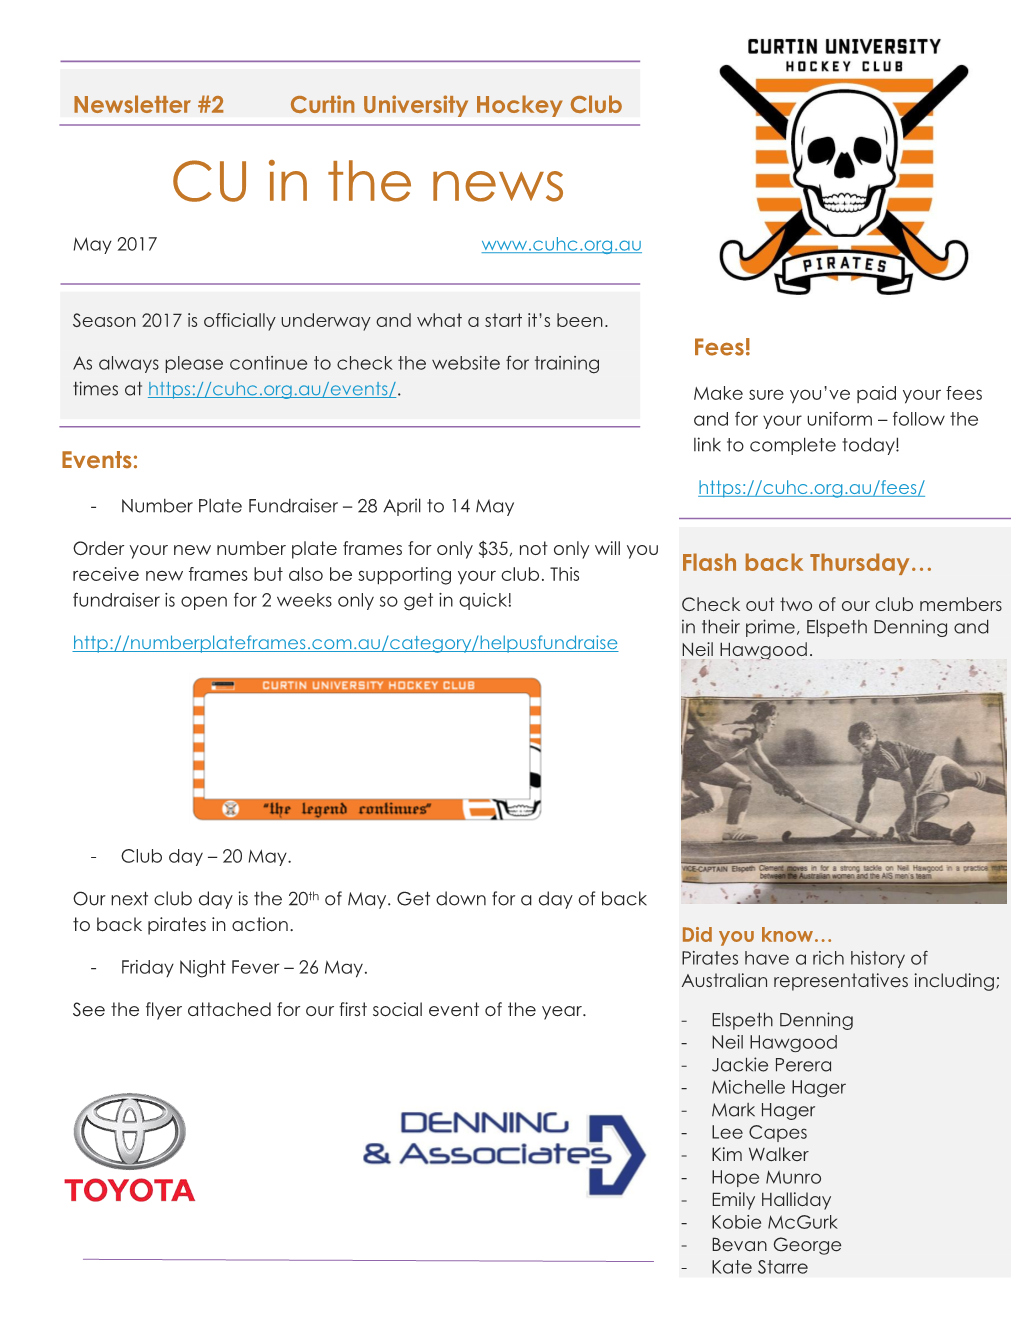 CU in the News